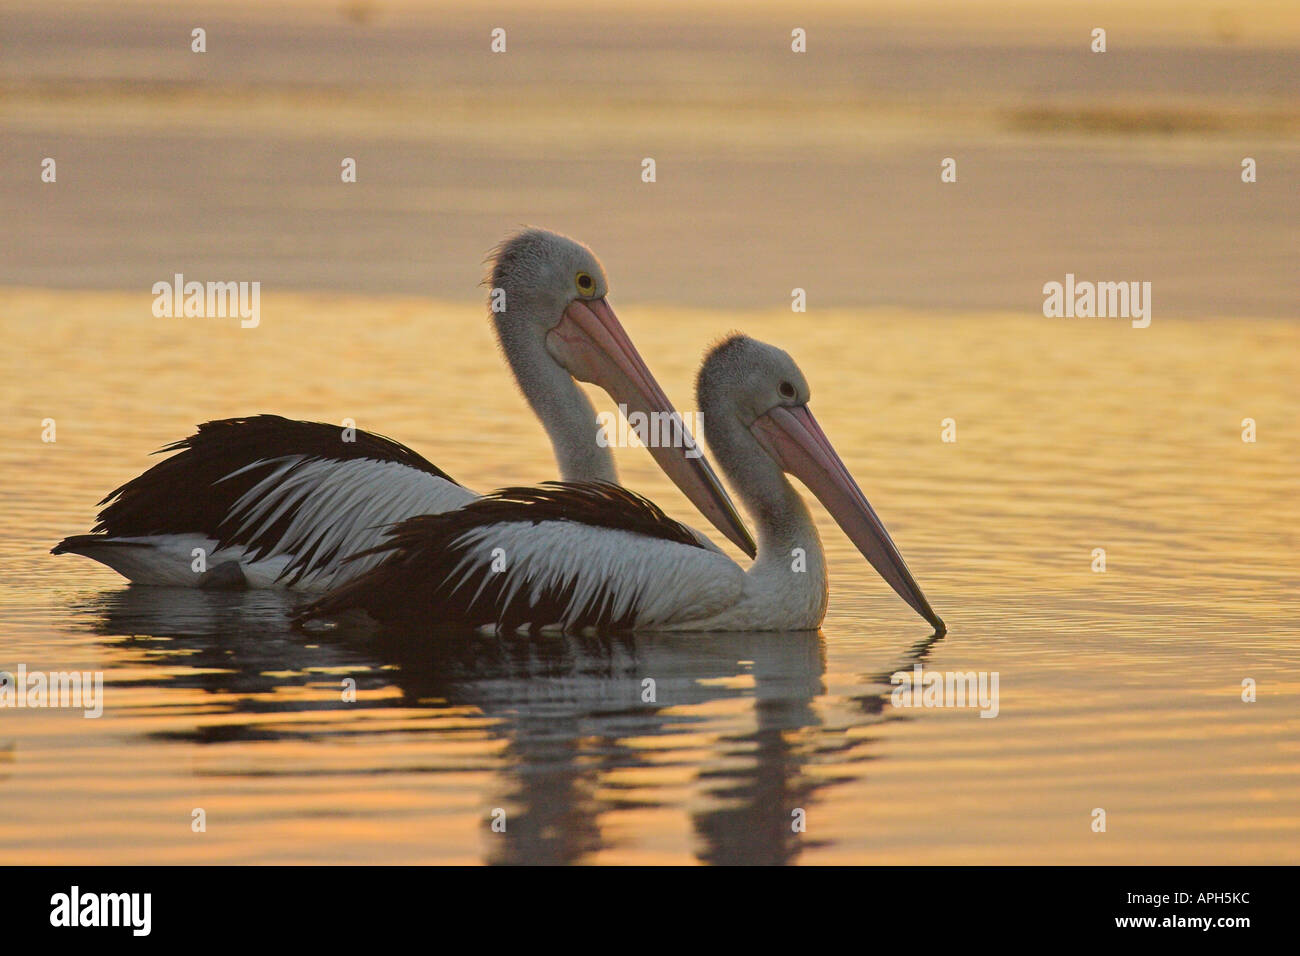 australian pelicans, pelecanus conspicillatus at sunset Stock Photo